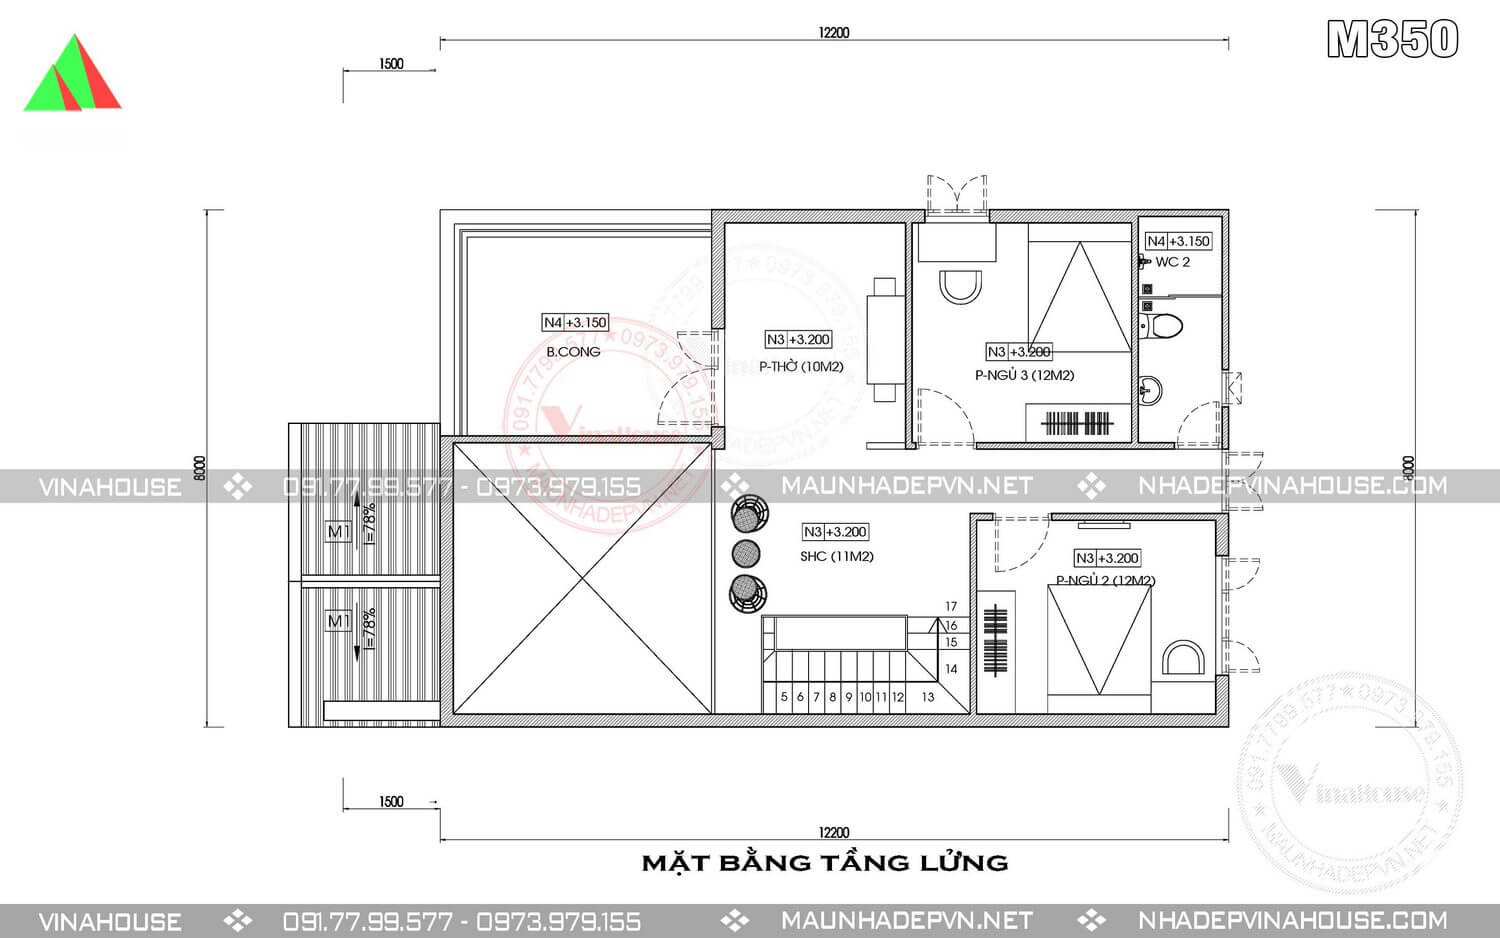 Nhà Cấp 4 Gác Lửng 3 Phòng Ngủ Tại Hưng Yên NDNC4130